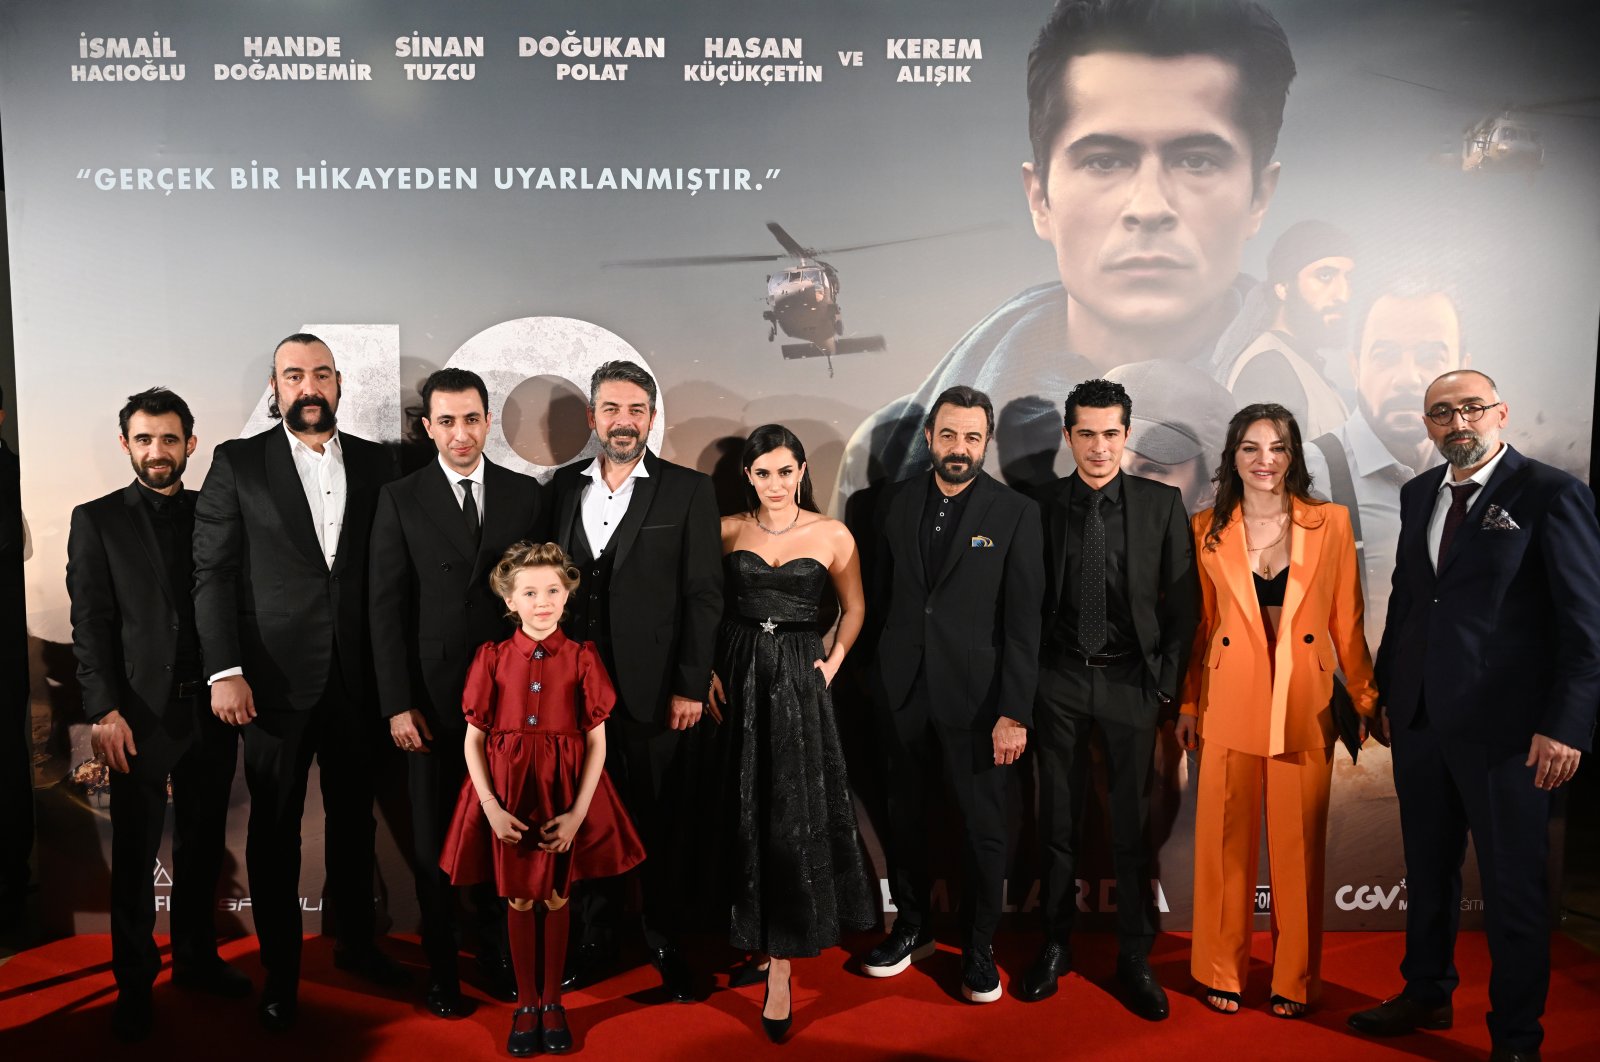 Türk filmi 49, IŞİD’in elindeki rehinelerin hikayesini anlatıyor